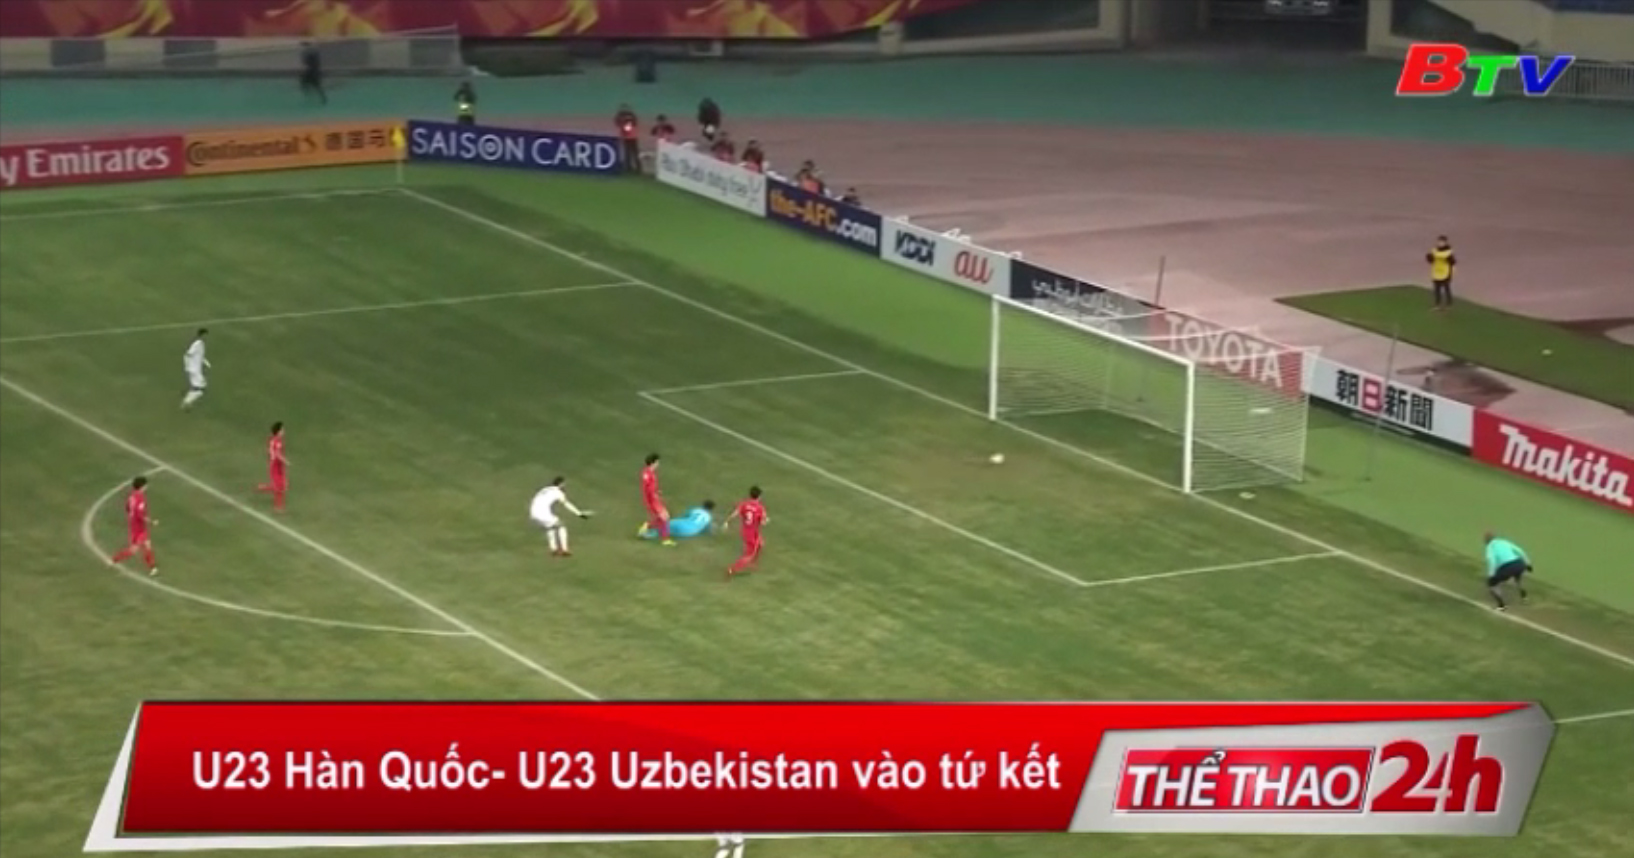 U23 Hàn Quốc - U23 Uzbekistan vào tứ kết